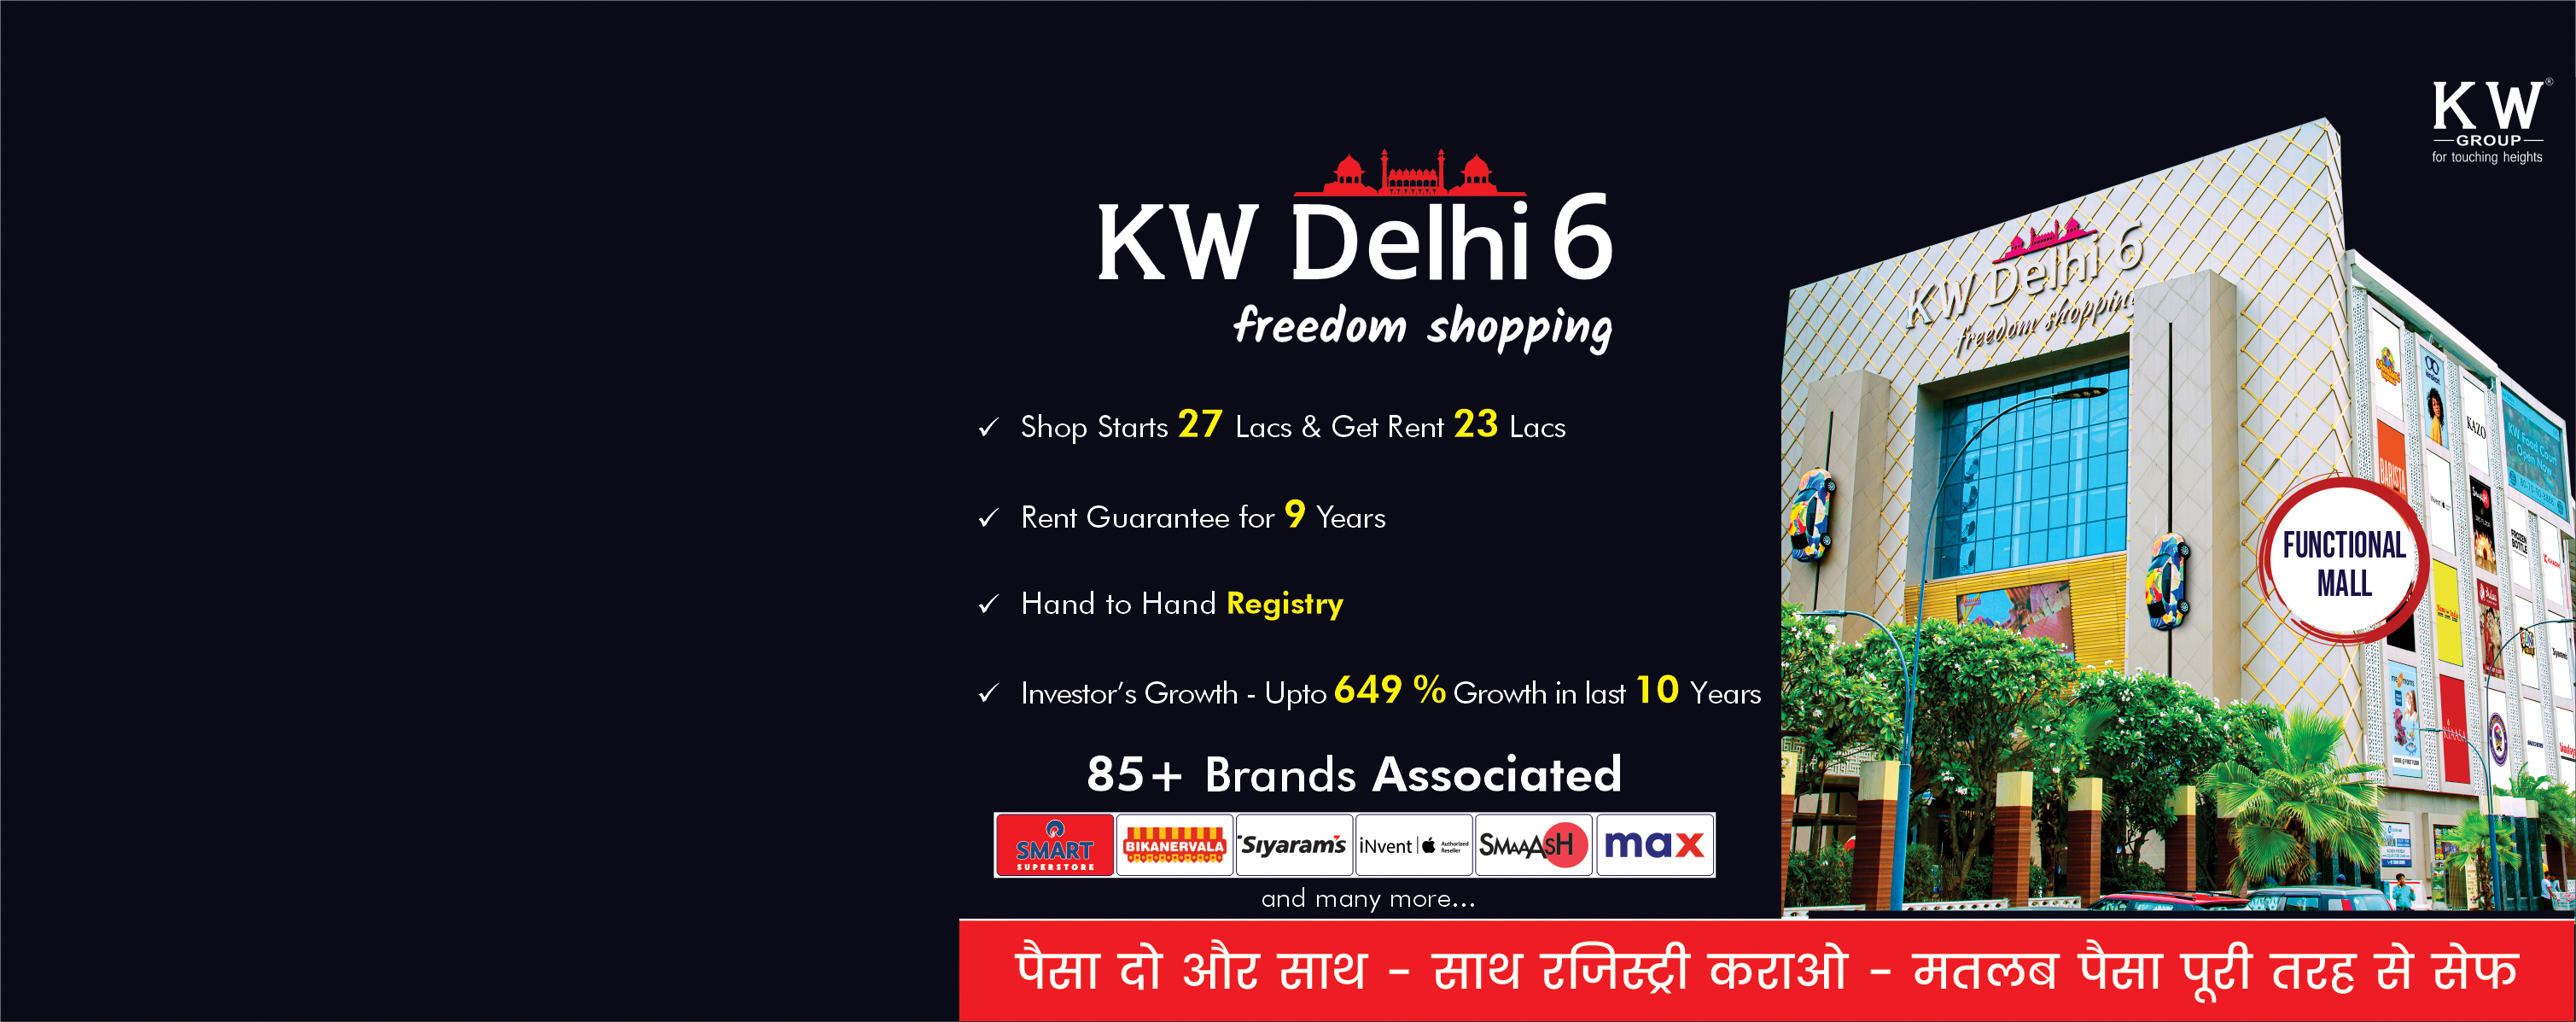 KW Delhi6 Freedom of shopping